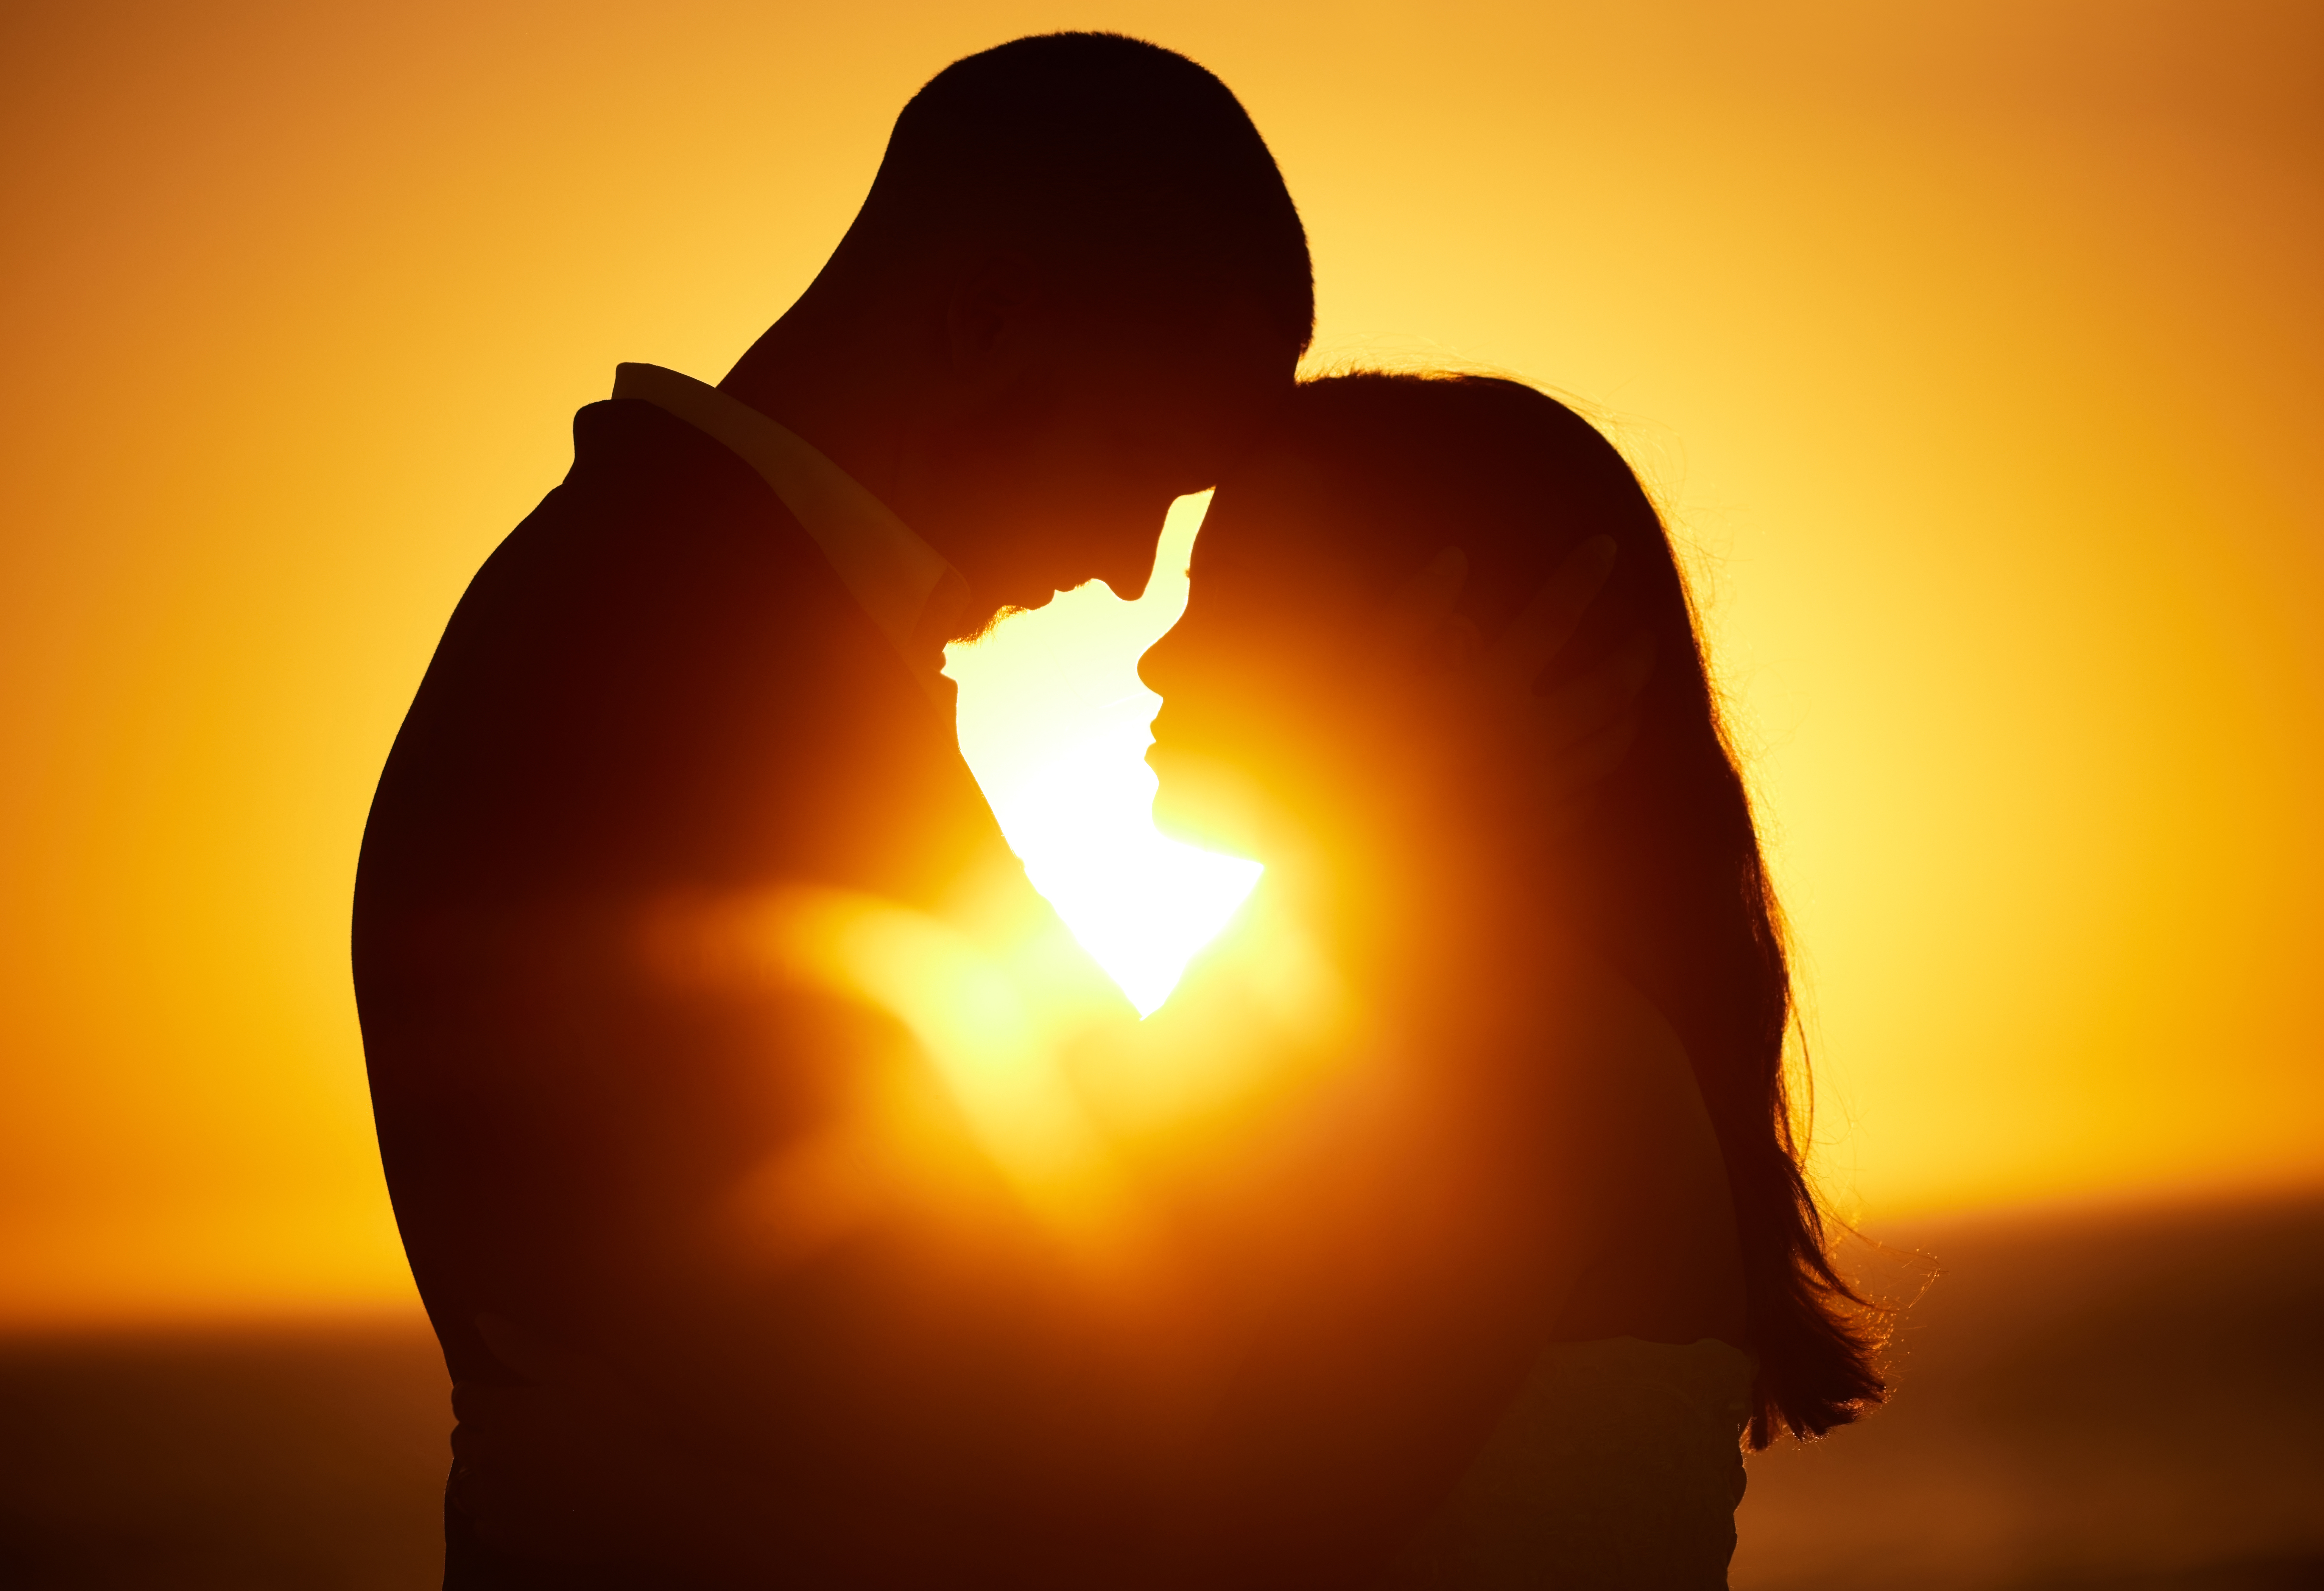 Zwei Personen sind - ineinander versunken - voe einem Sonnenuntergang als Silohette zu sehen